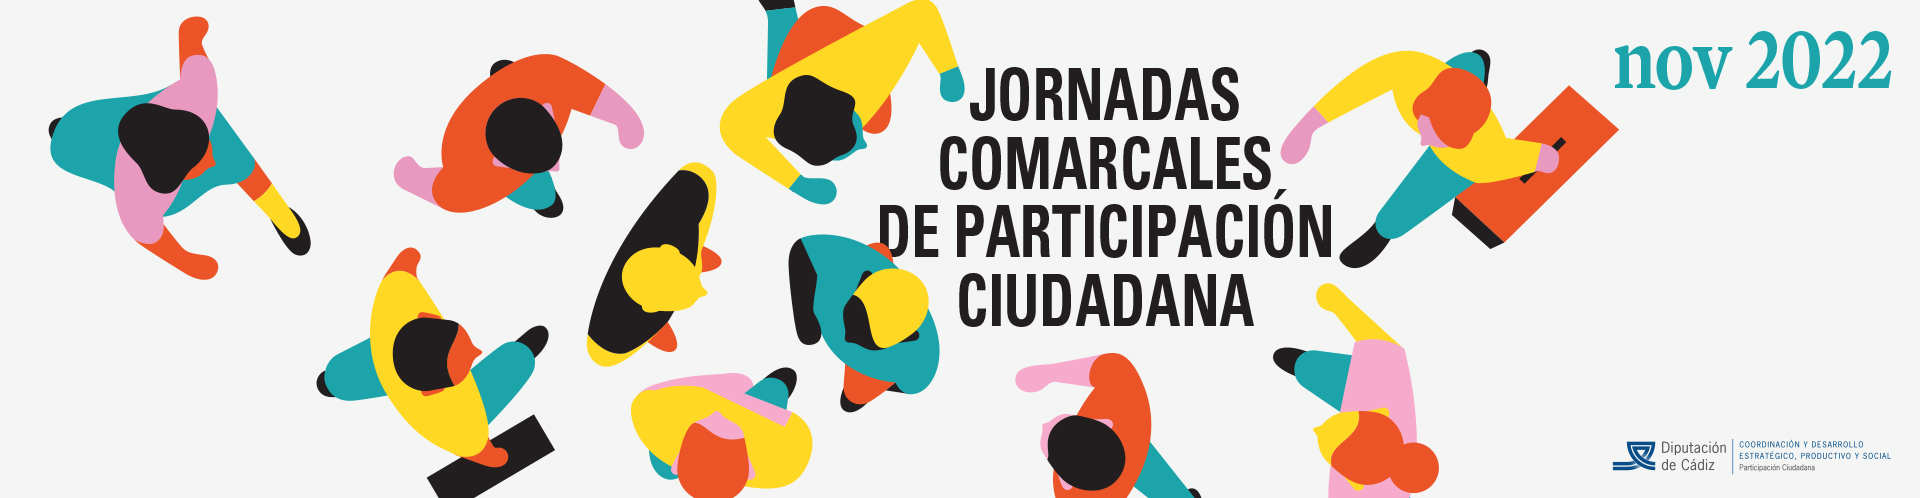 Jornadas_Comarcales_de_Participacion_Ciudadana_1920x498_02